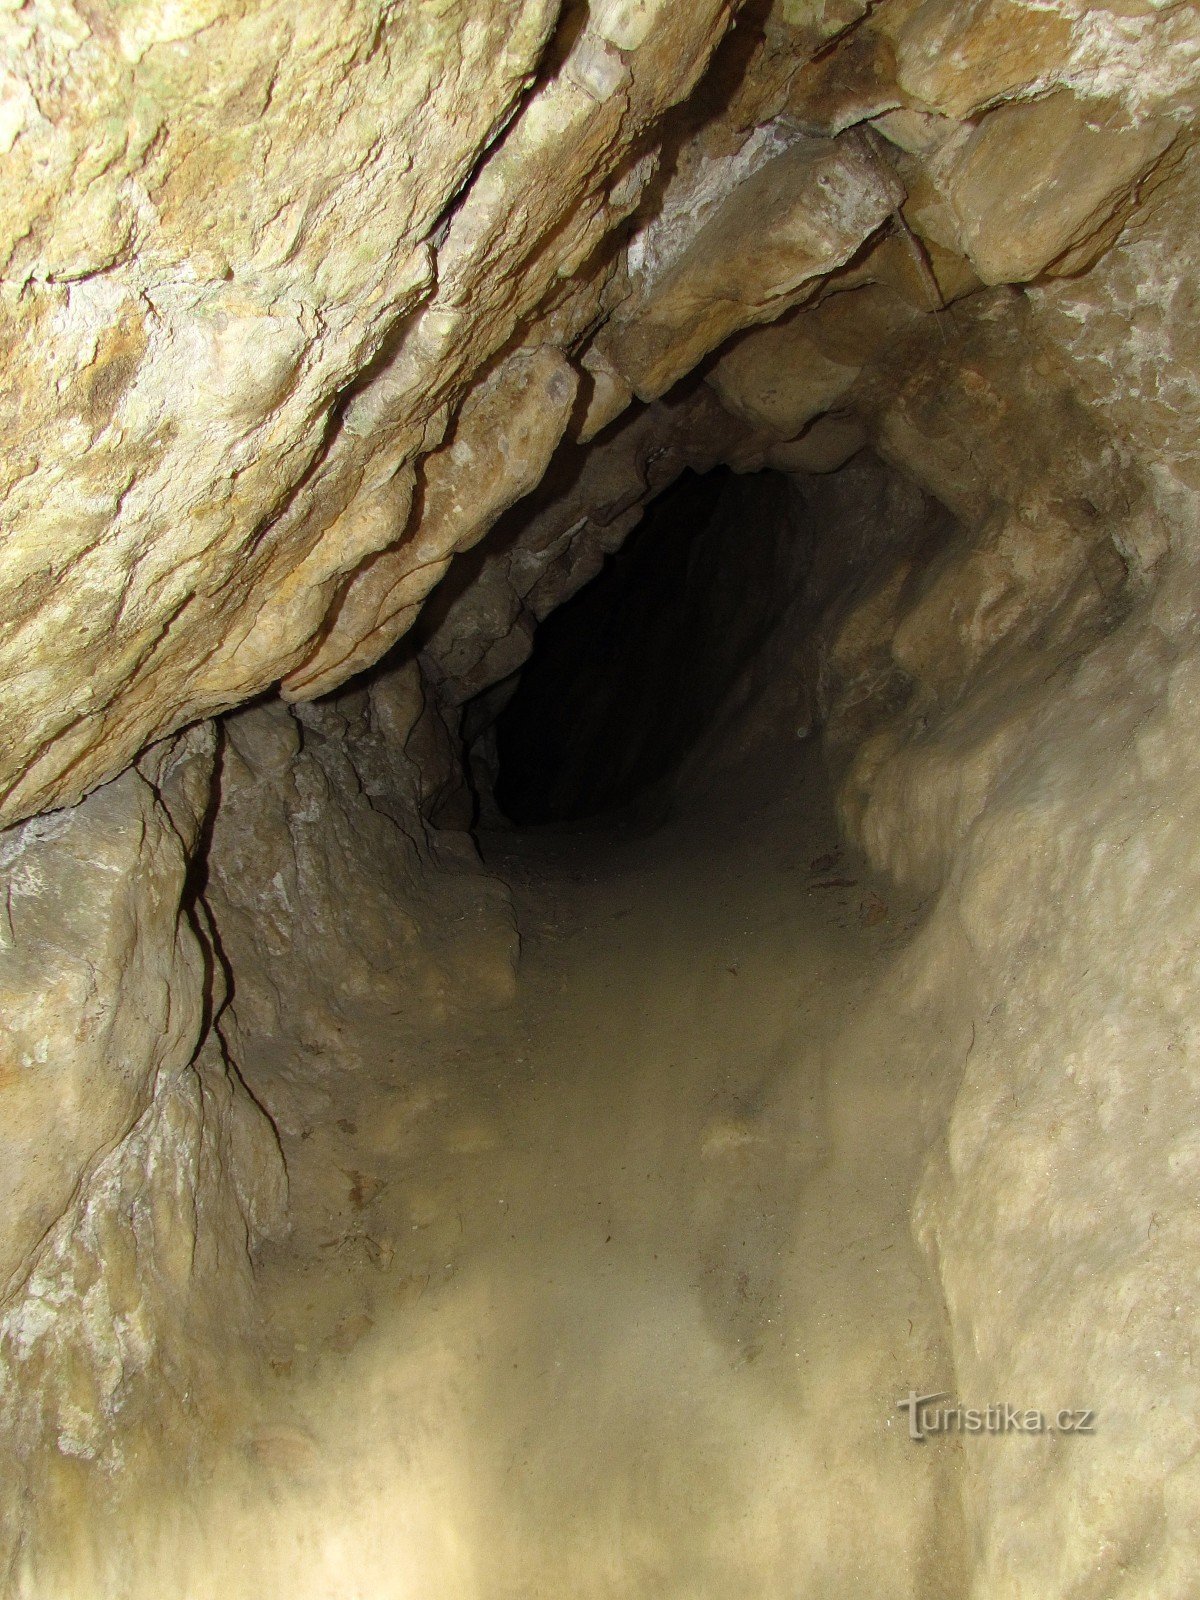 În spatele secretului lui Čecher - o peșteră pseudocarstică